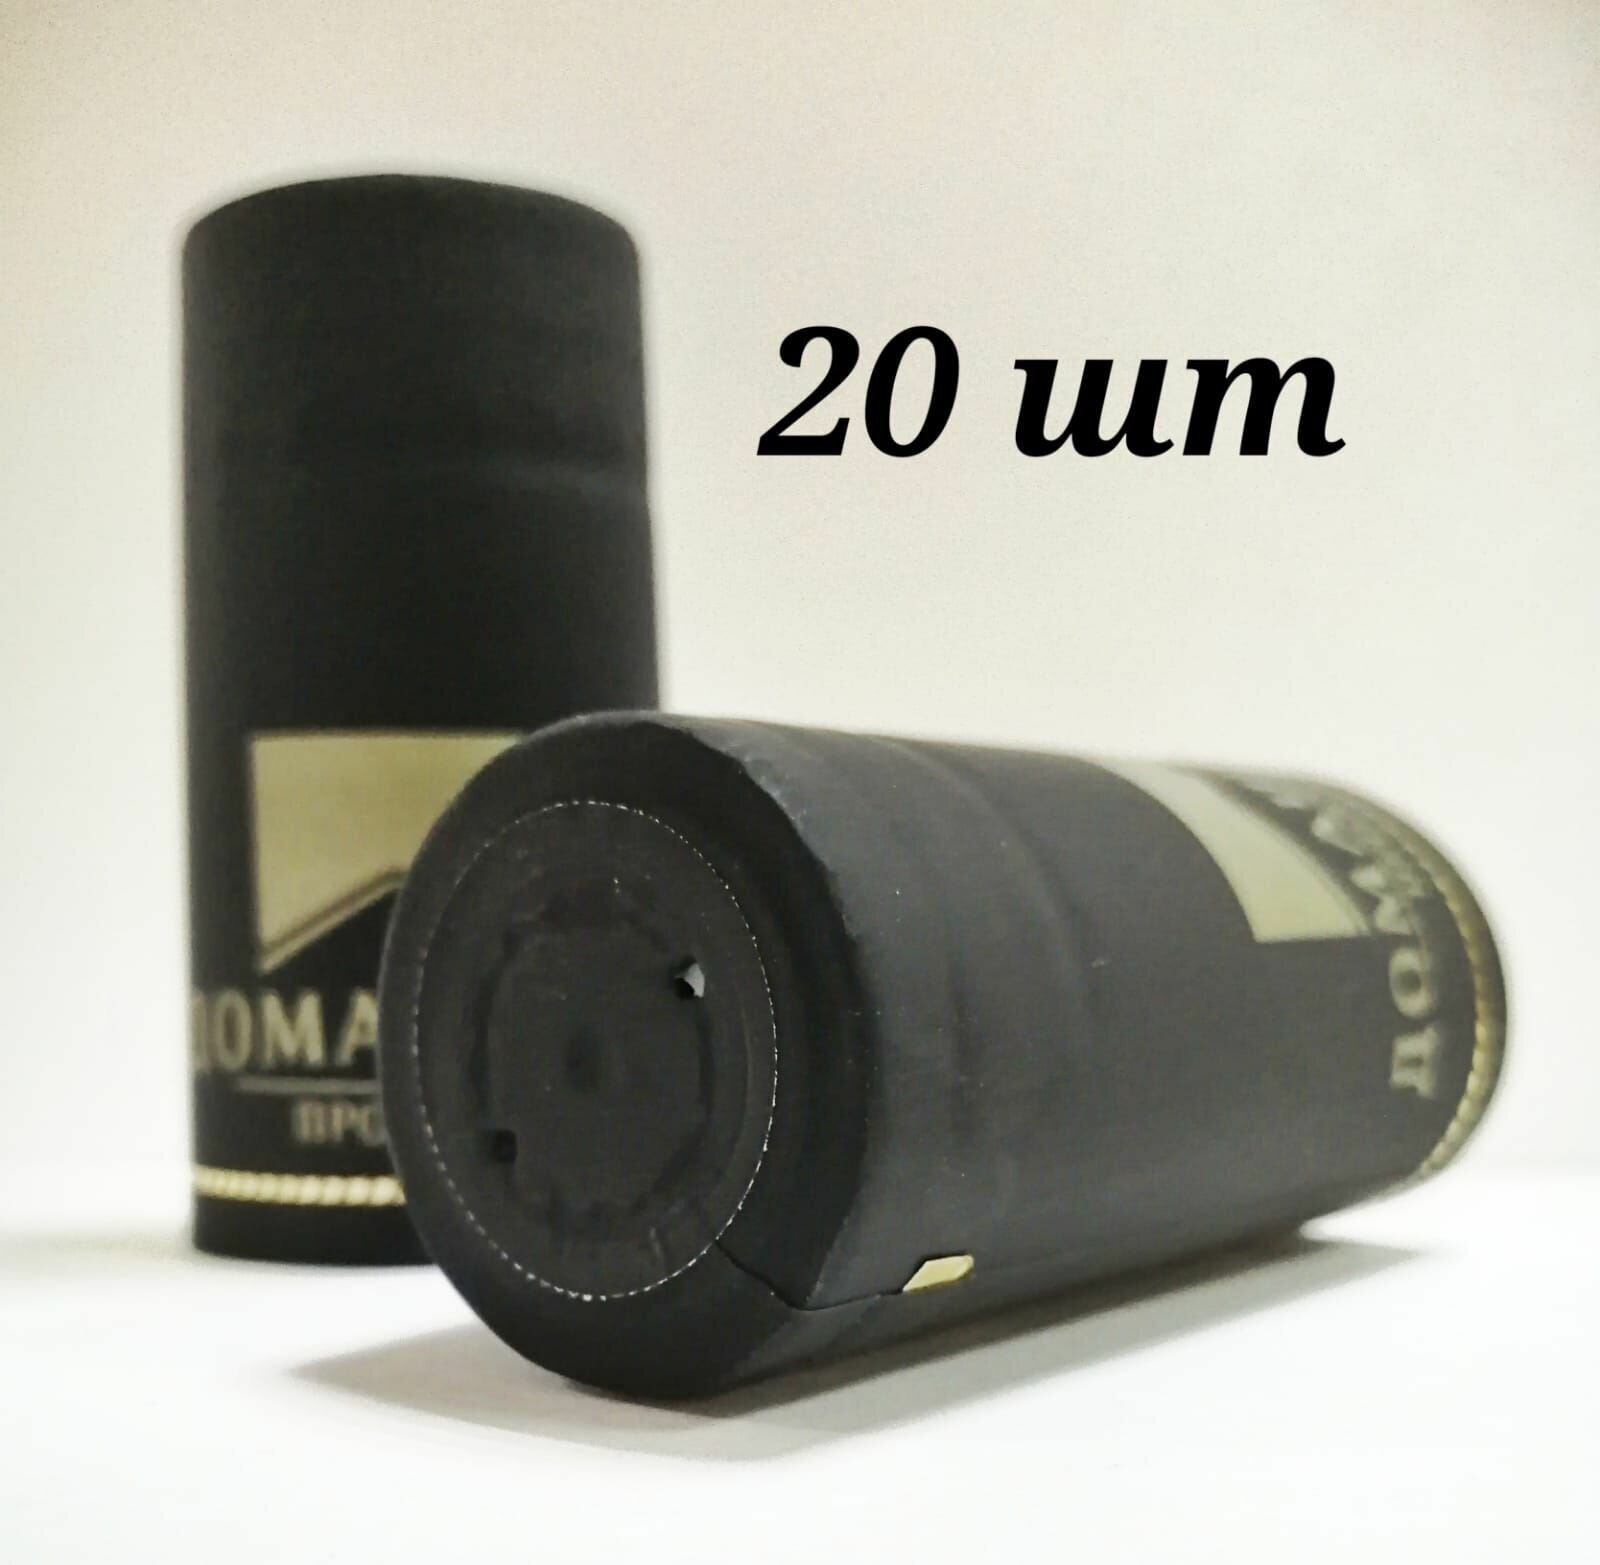 Термоусадочный колпачок (ТУК), цвет Черный матовый, 65 мм. Домашний продукт, 20шт, для винных бутылок.